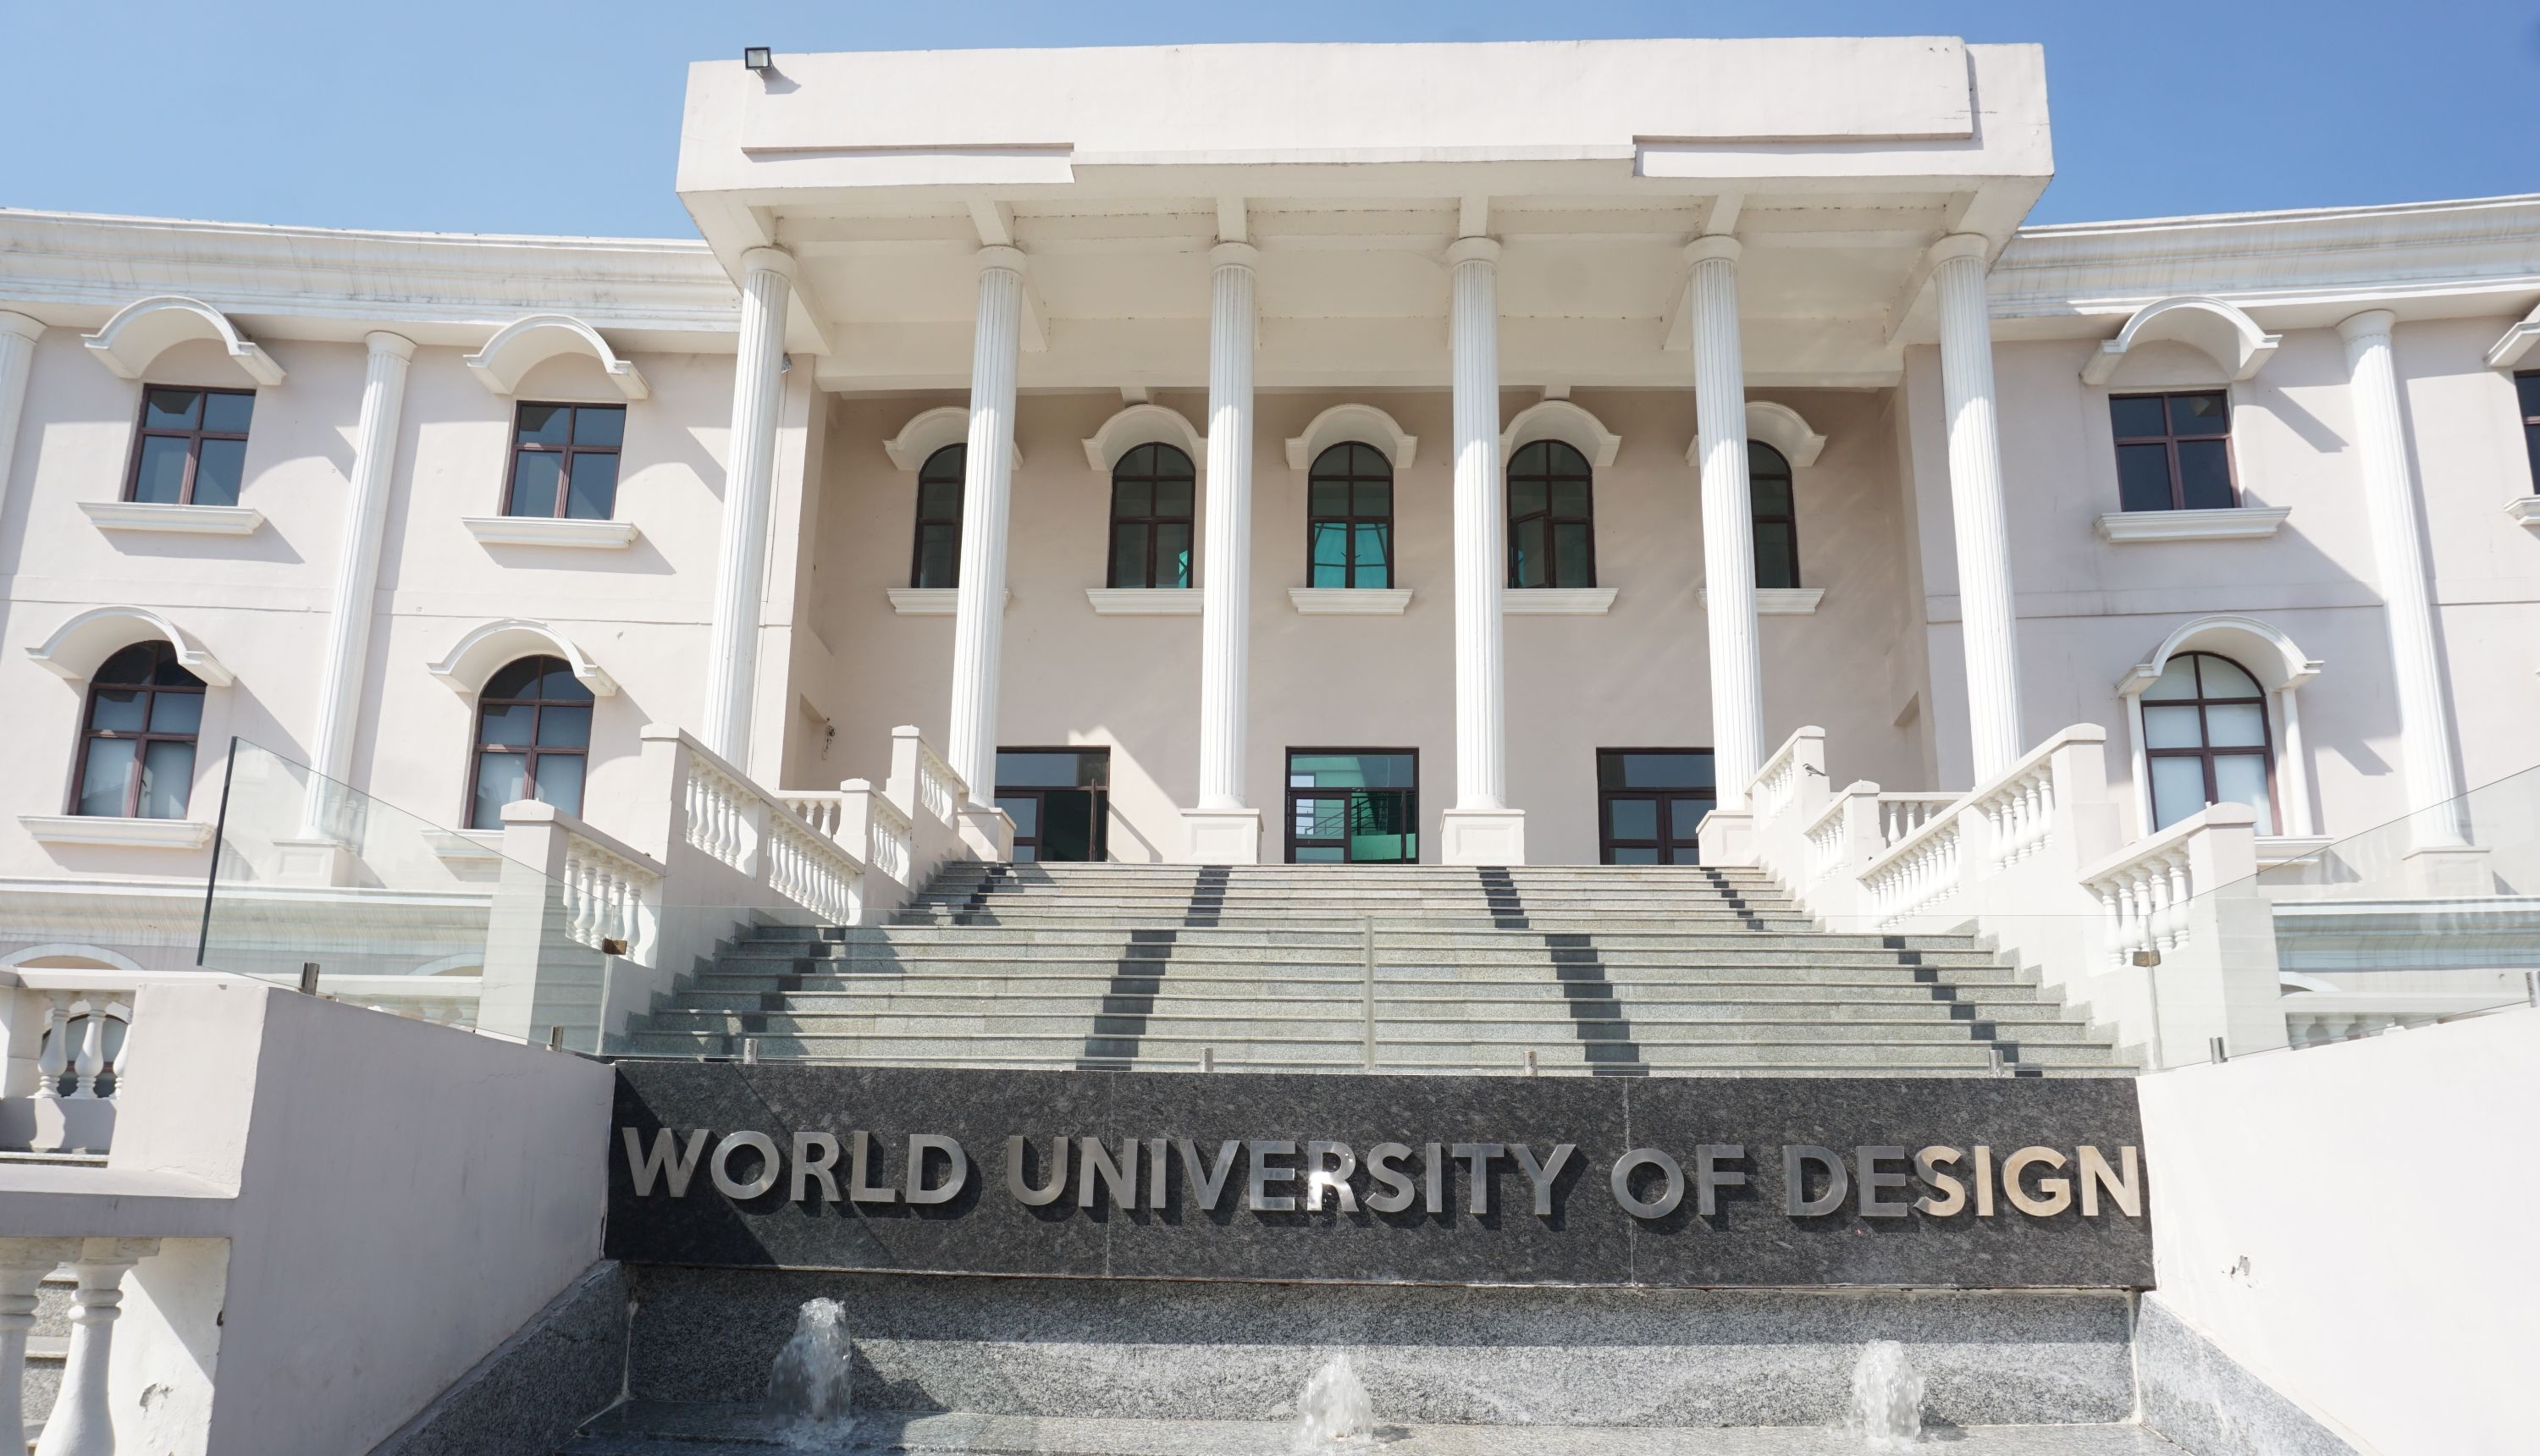 World University of Design Image